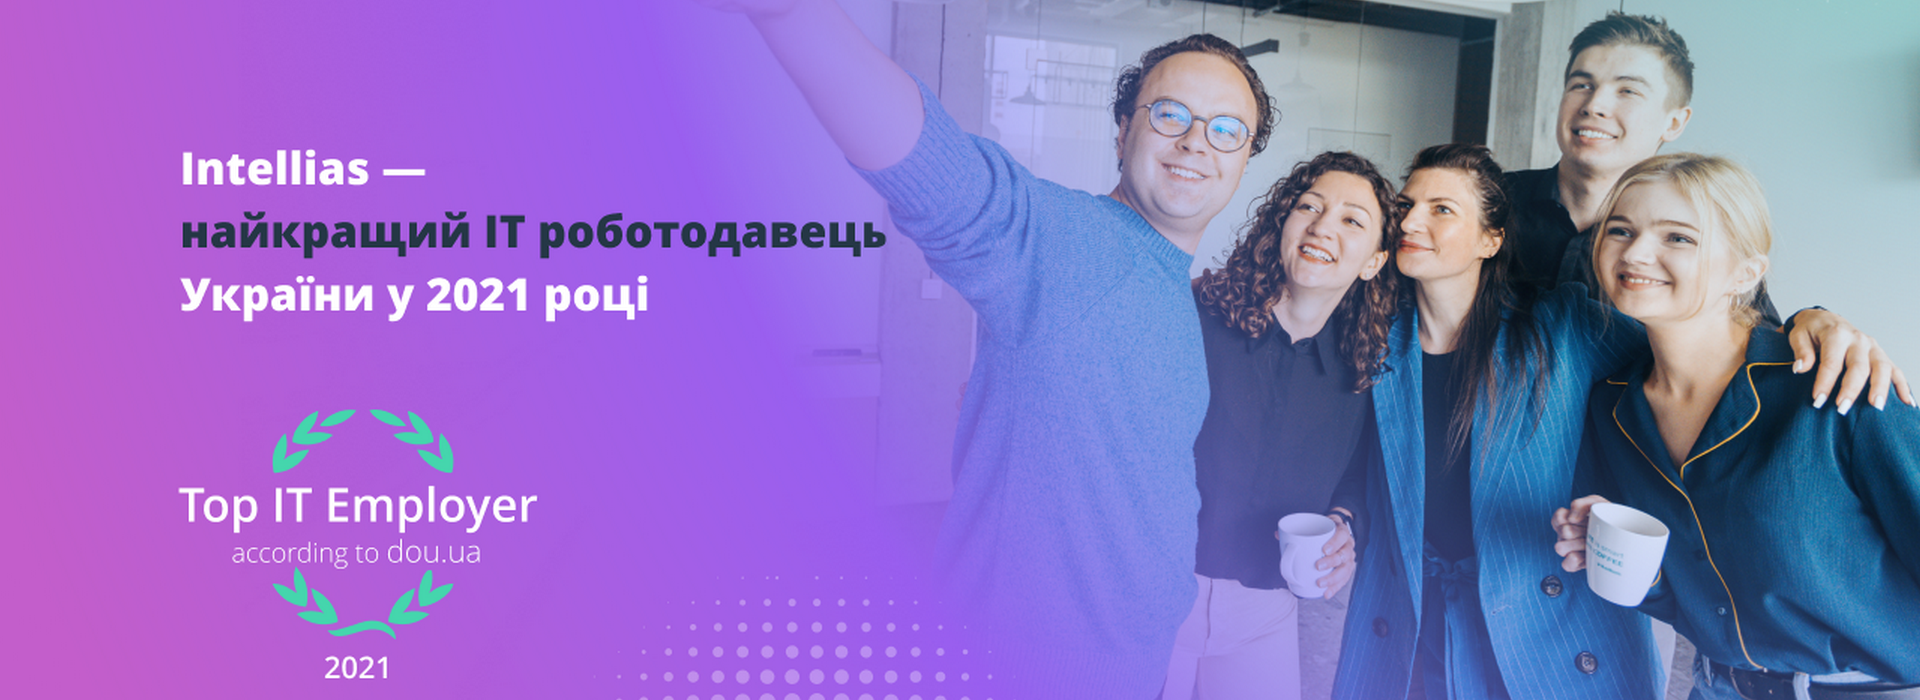 Intellias – найкращий IT роботодавець України у 2021 році